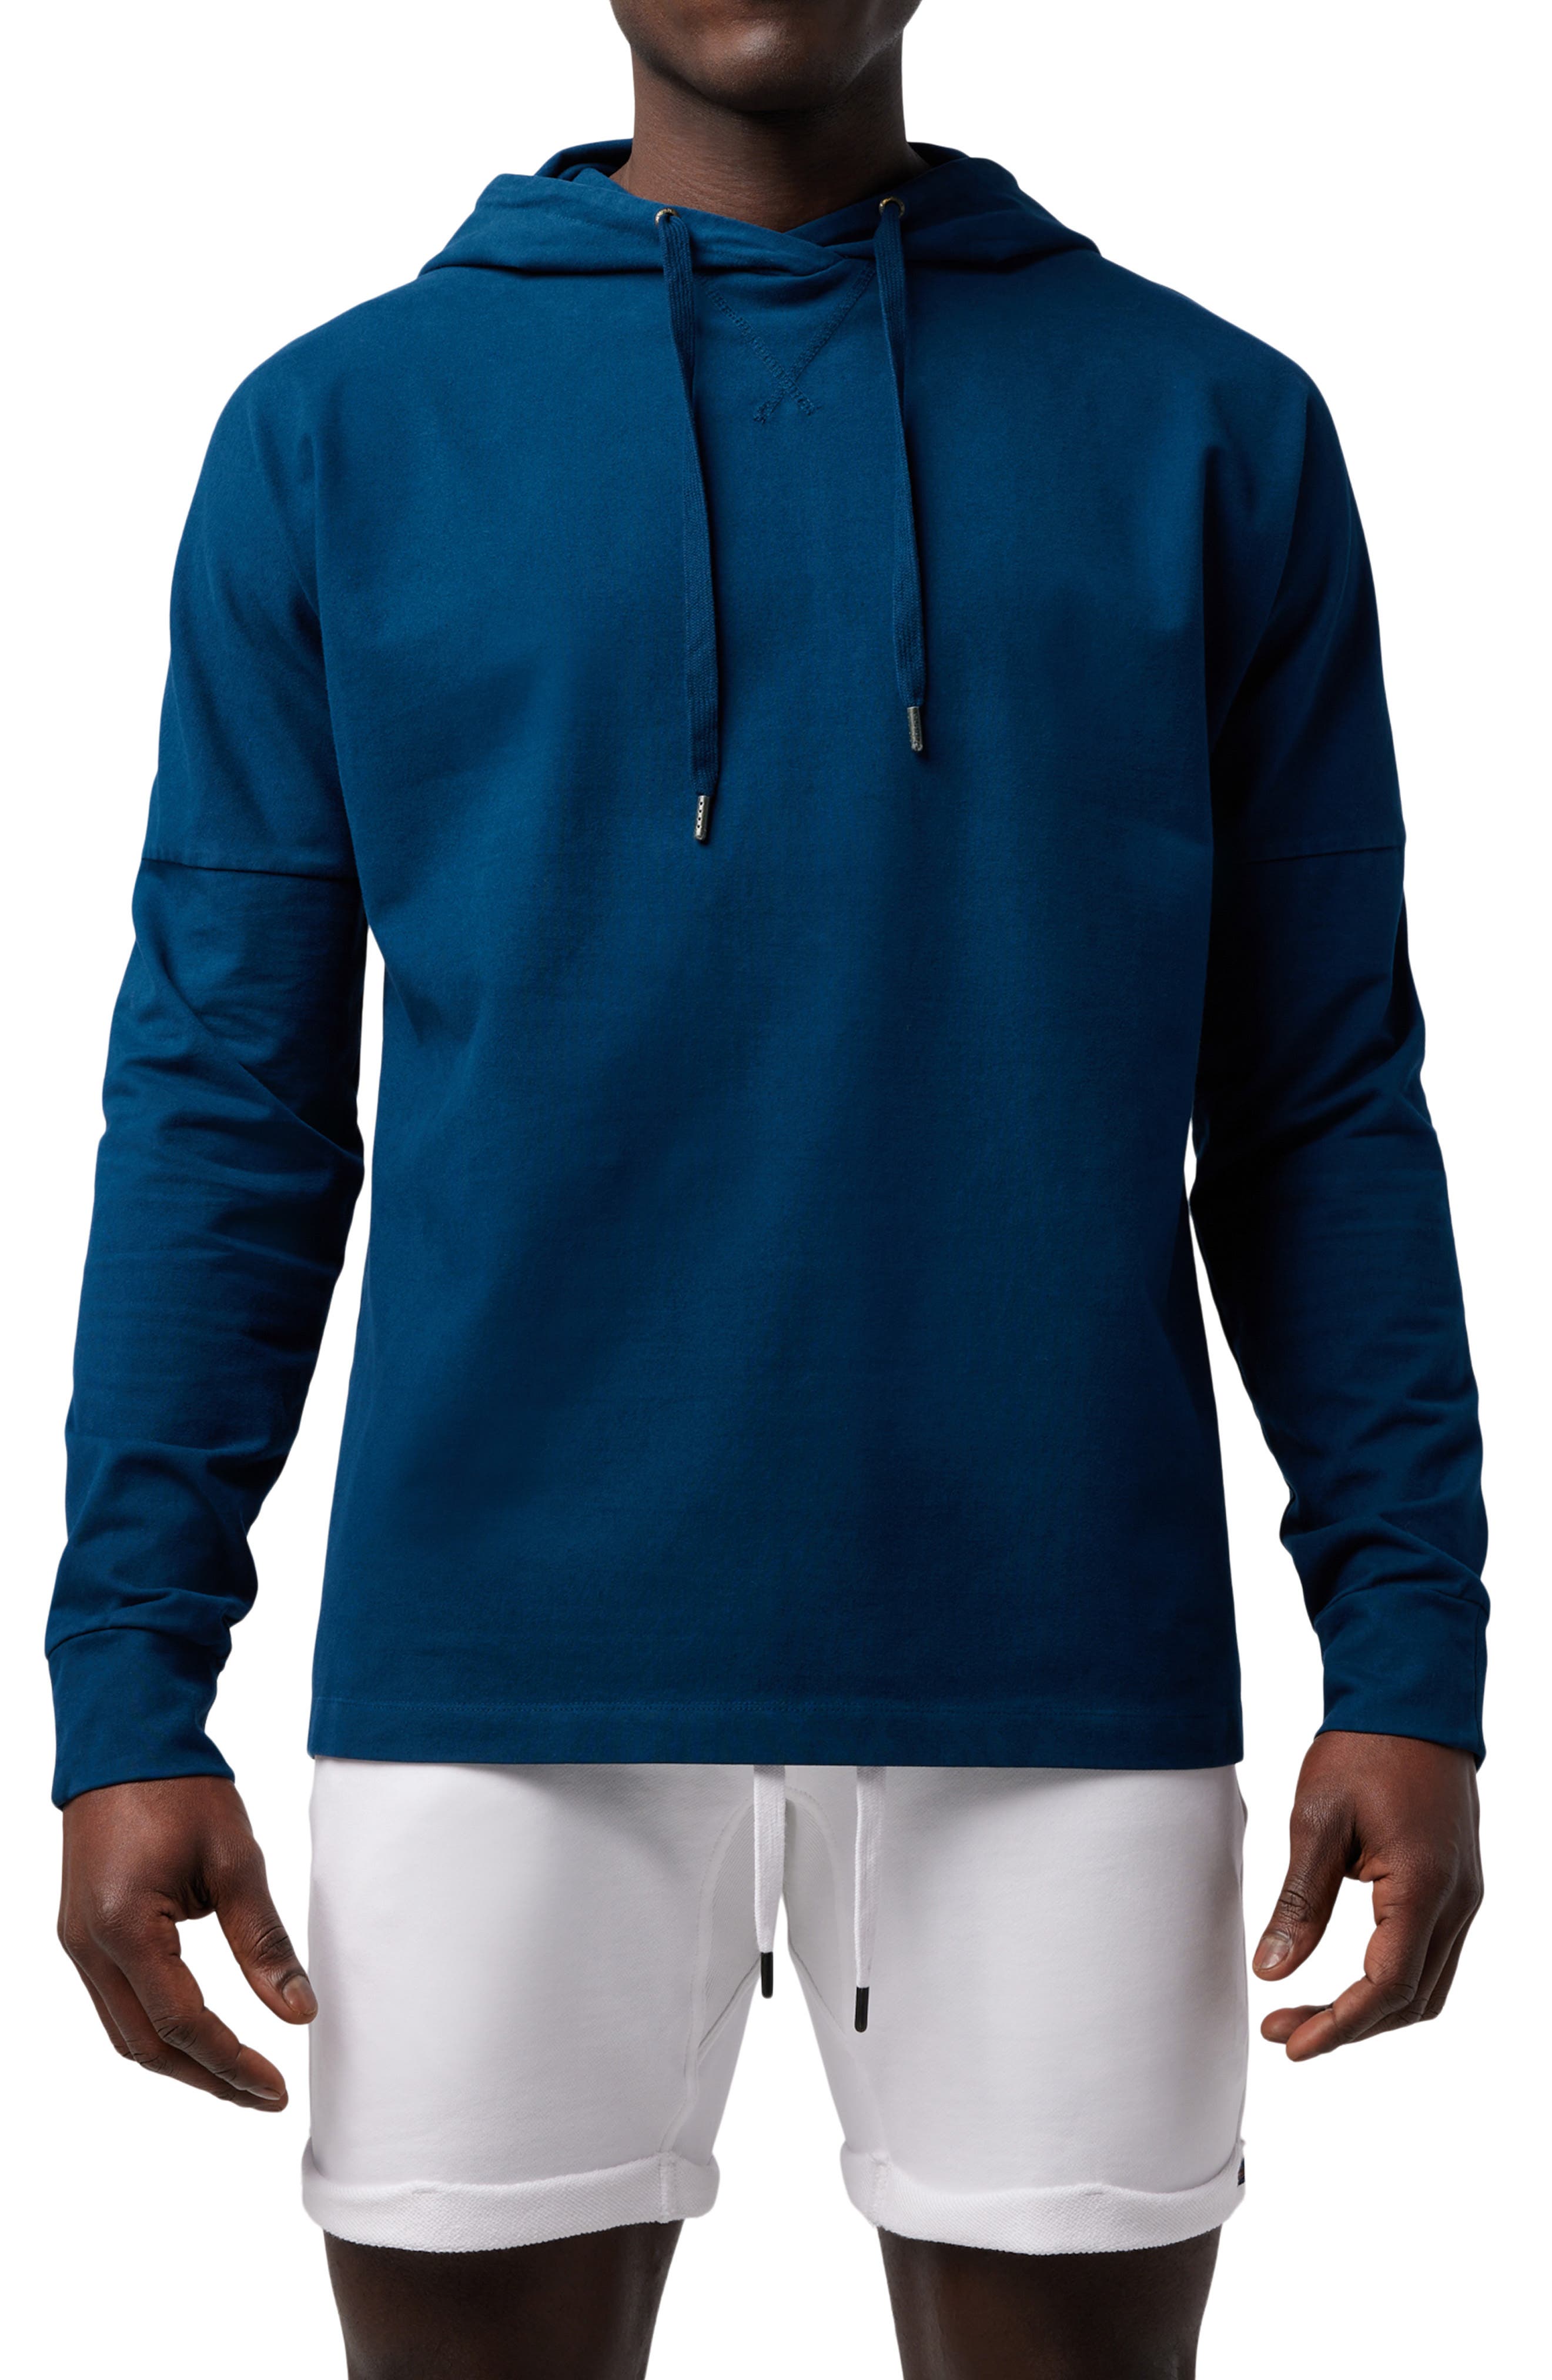 Skin Hoodie for Men Team Casual Women Sport Unisex Teen Hooded Fleece Pullover Fashion Sweatshirt 